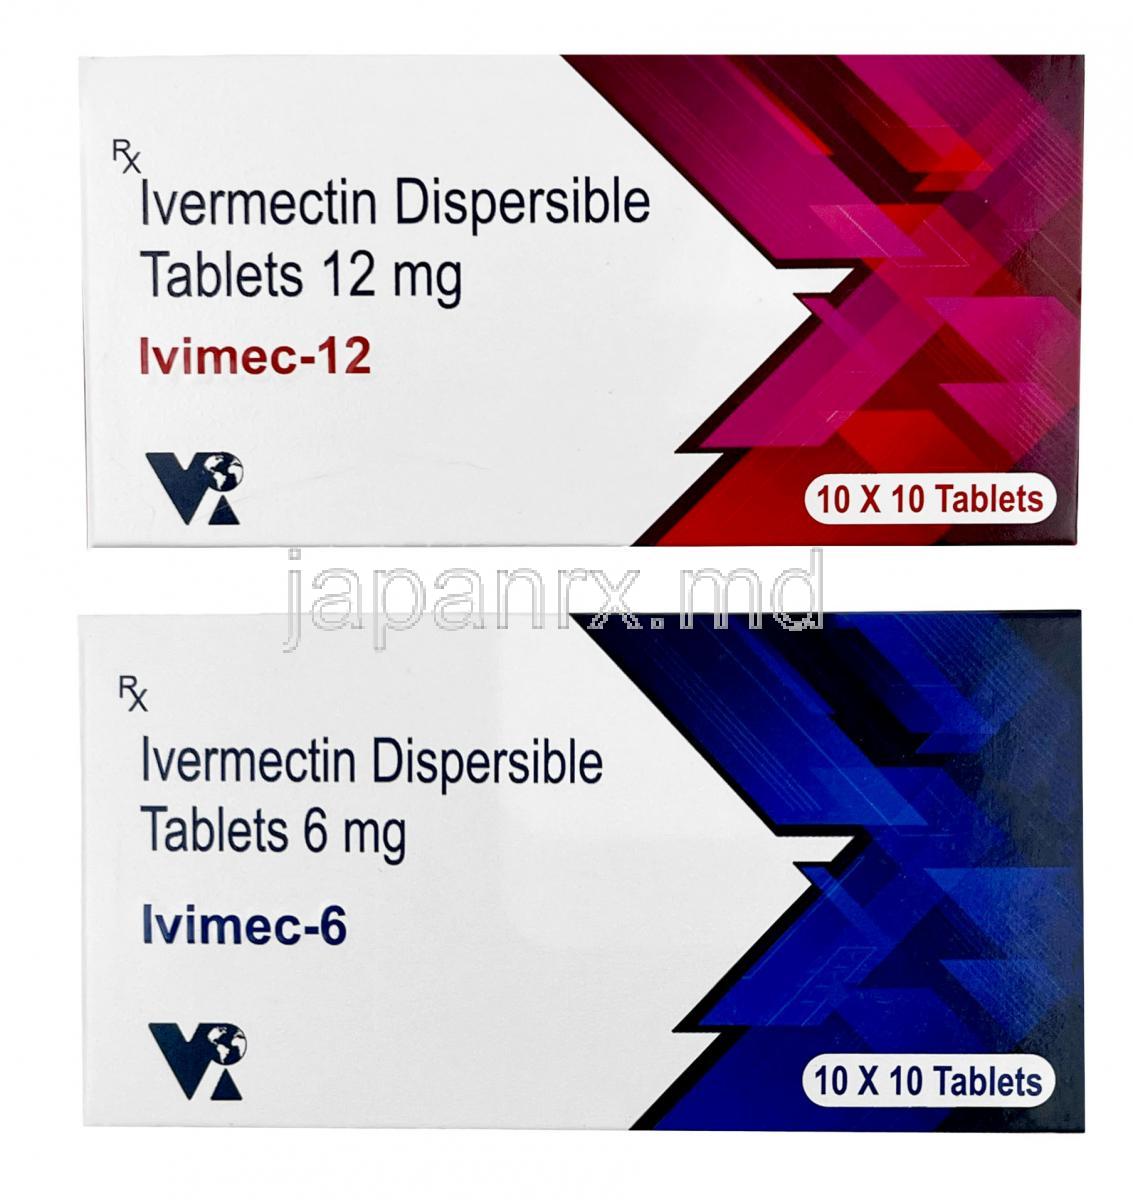 イビメック (イベルメクチン) 6mg 箱、錠剤